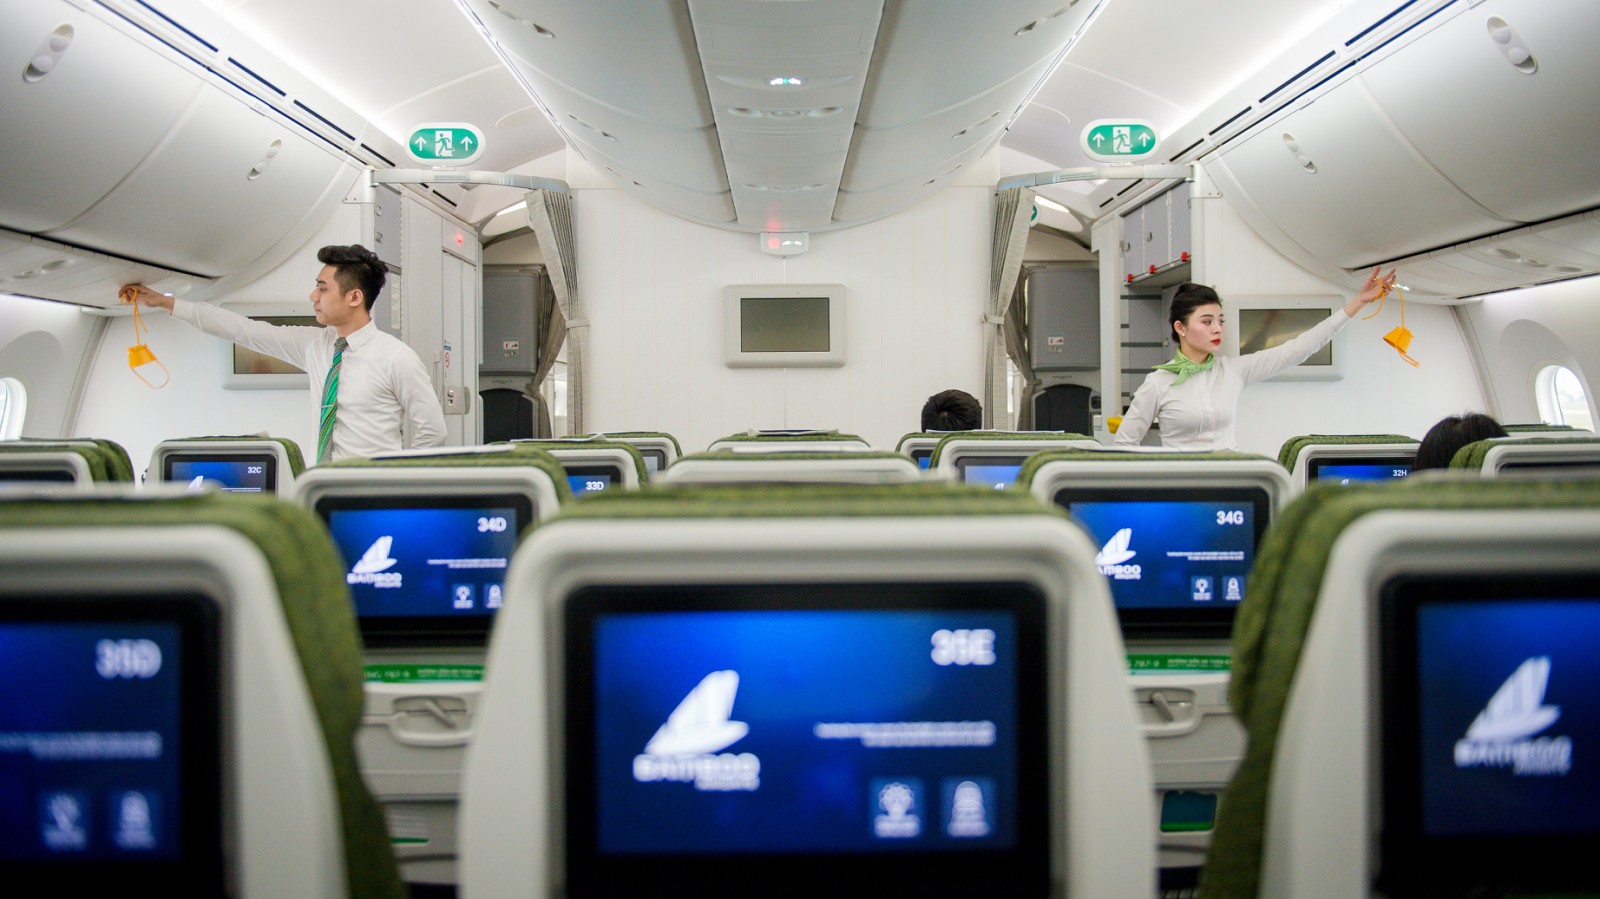 Các gói dịch vụ kỳ nghỉ trọn gói đầu tiên do Bamboo Airways cung cấp dịch vụ hàng không từ Hà Nội và TP. HCM đến các quần thể du lịch tầm cỡ quốc tế của Vinpearl tại Nha Trang, Phú Quốc, Đà Nẵng - Nam Hội An